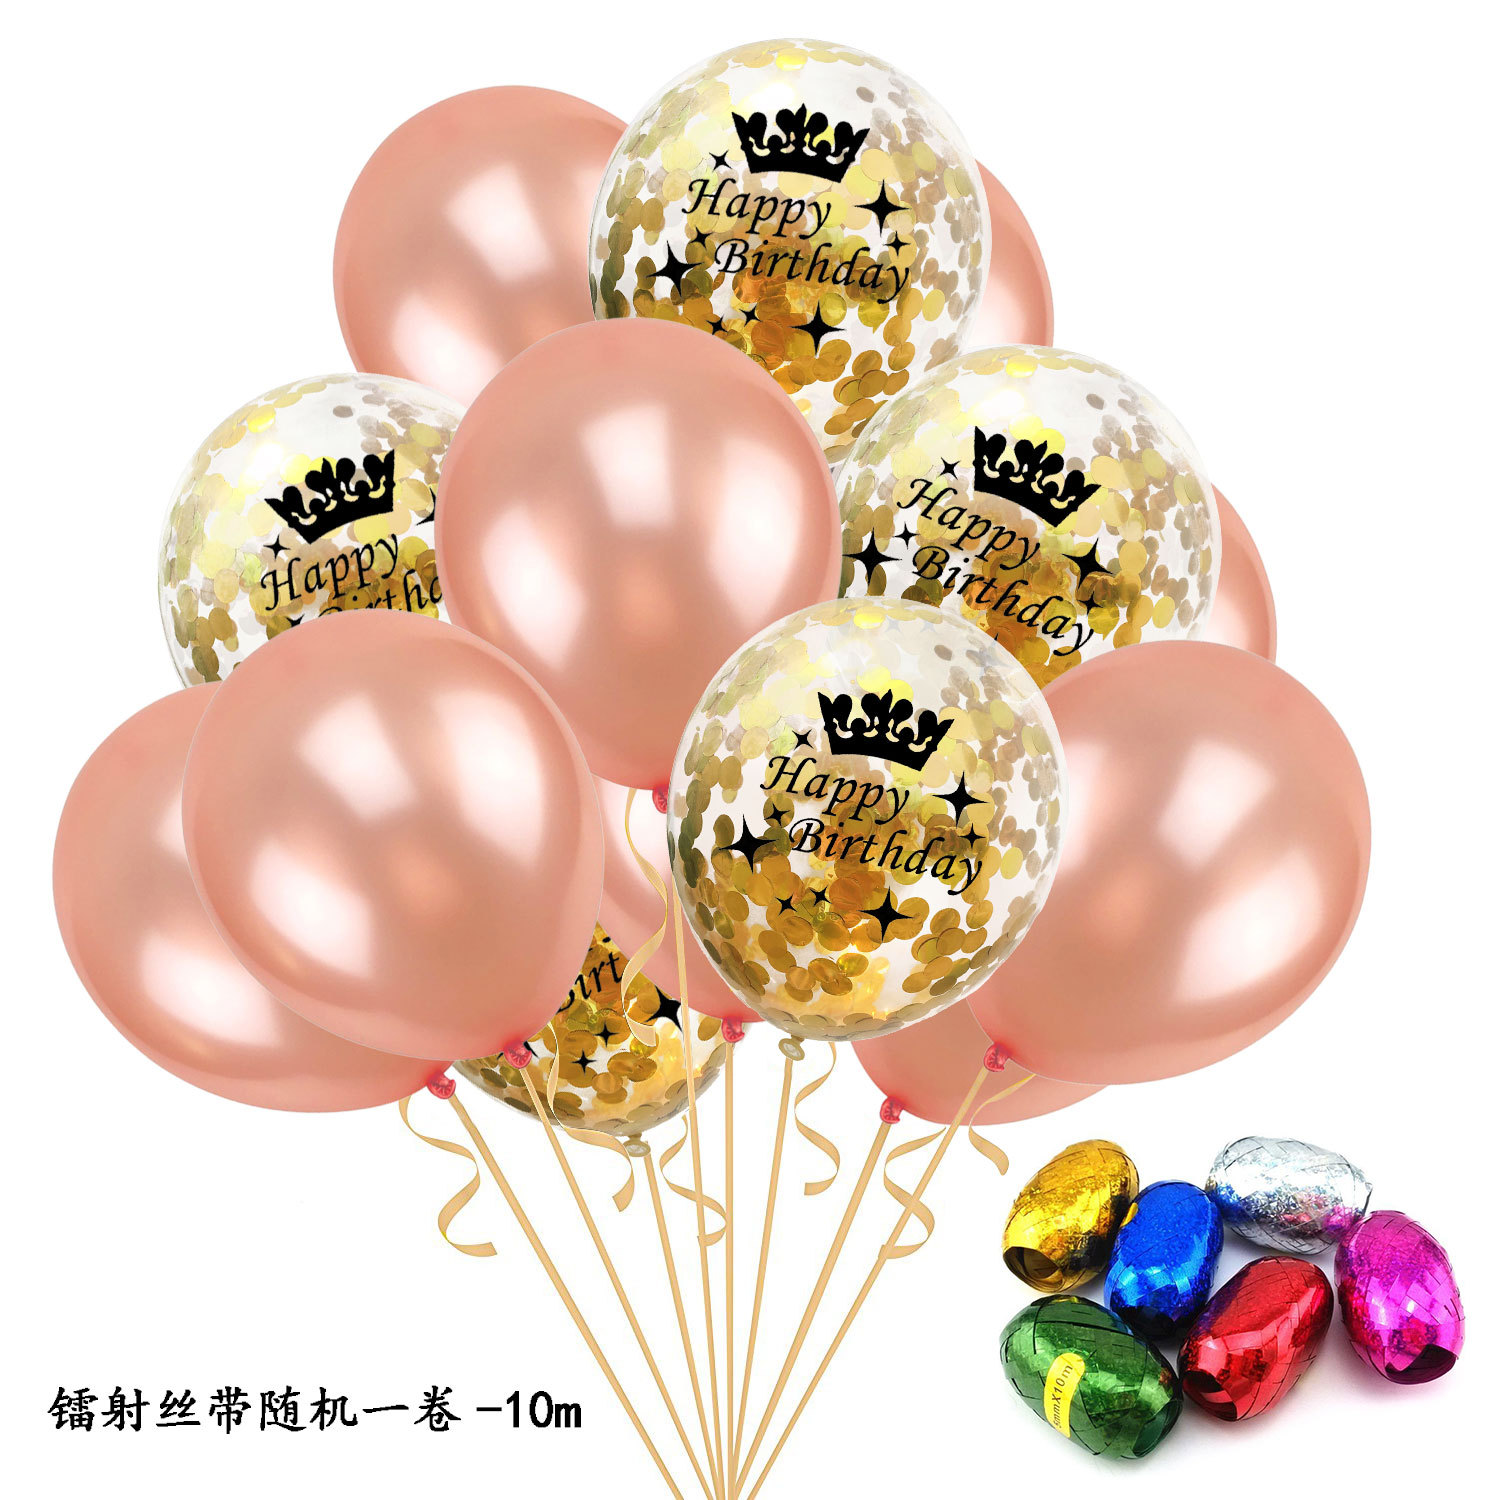 新款 五星皇冠 大号金色皇冠气球 婚庆派对生日装饰布置气球-阿里巴巴